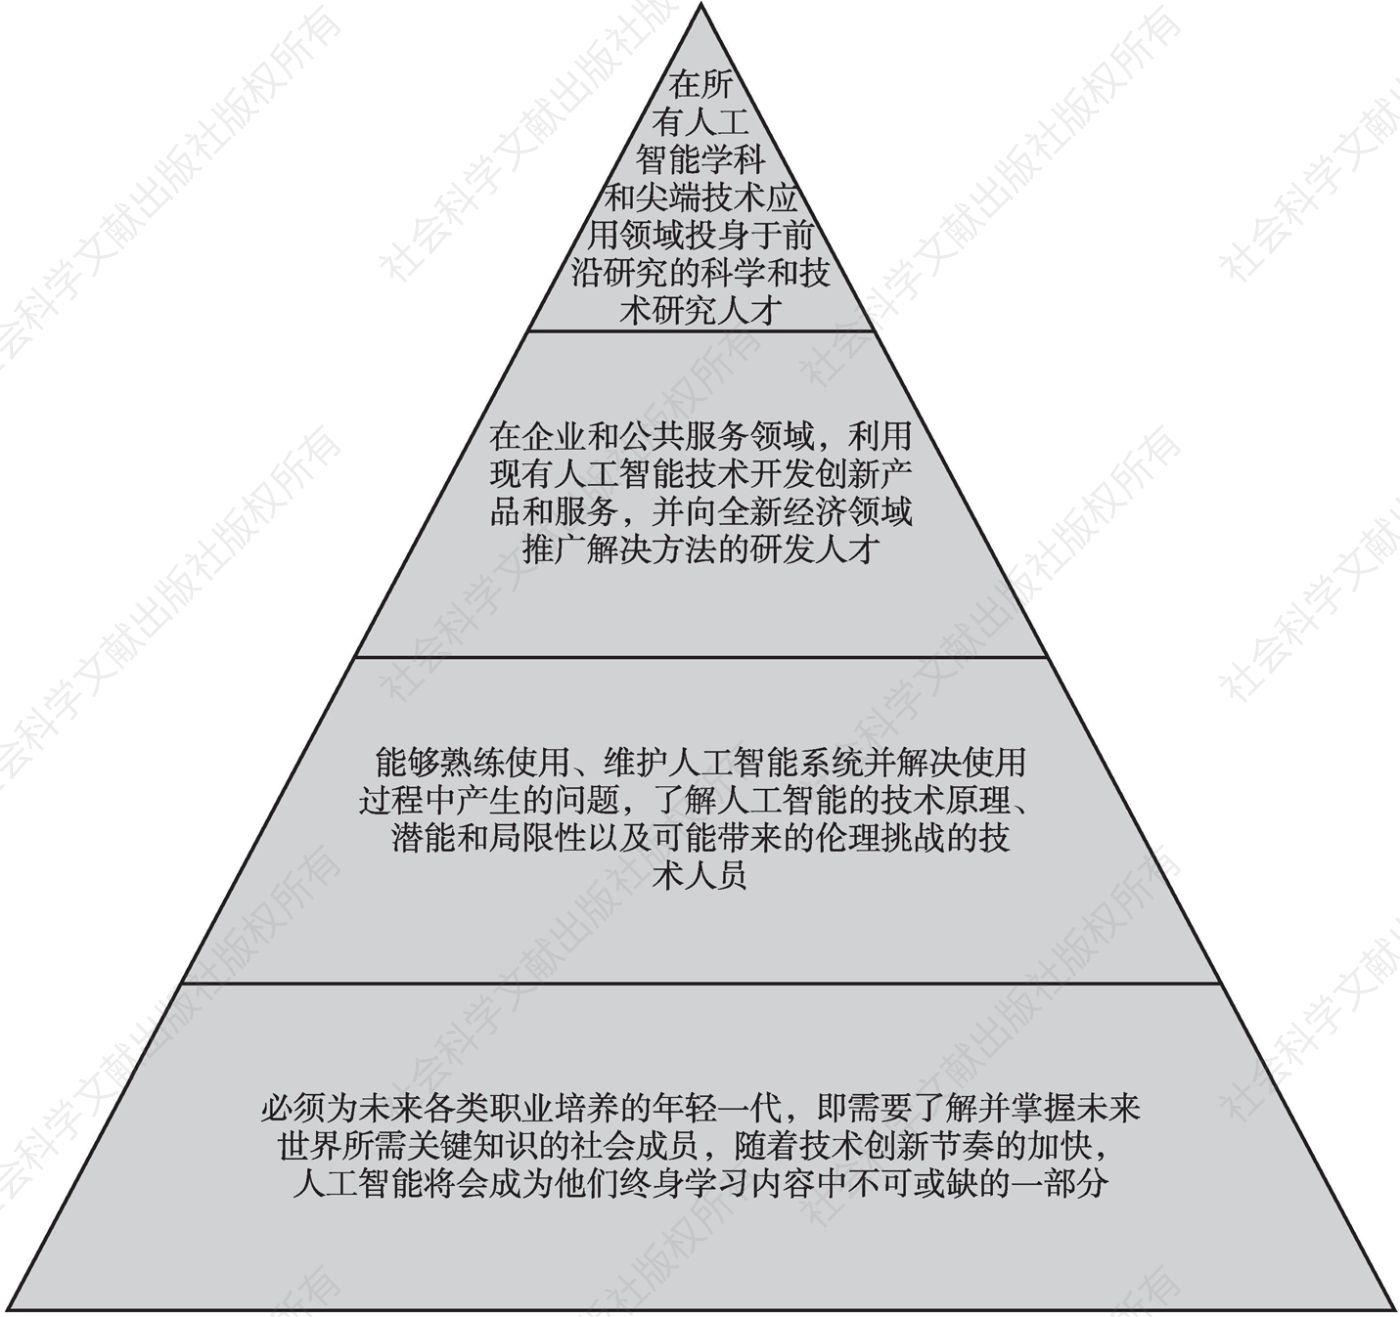 图1 未来社会人工智能领域人才需求金字塔结构